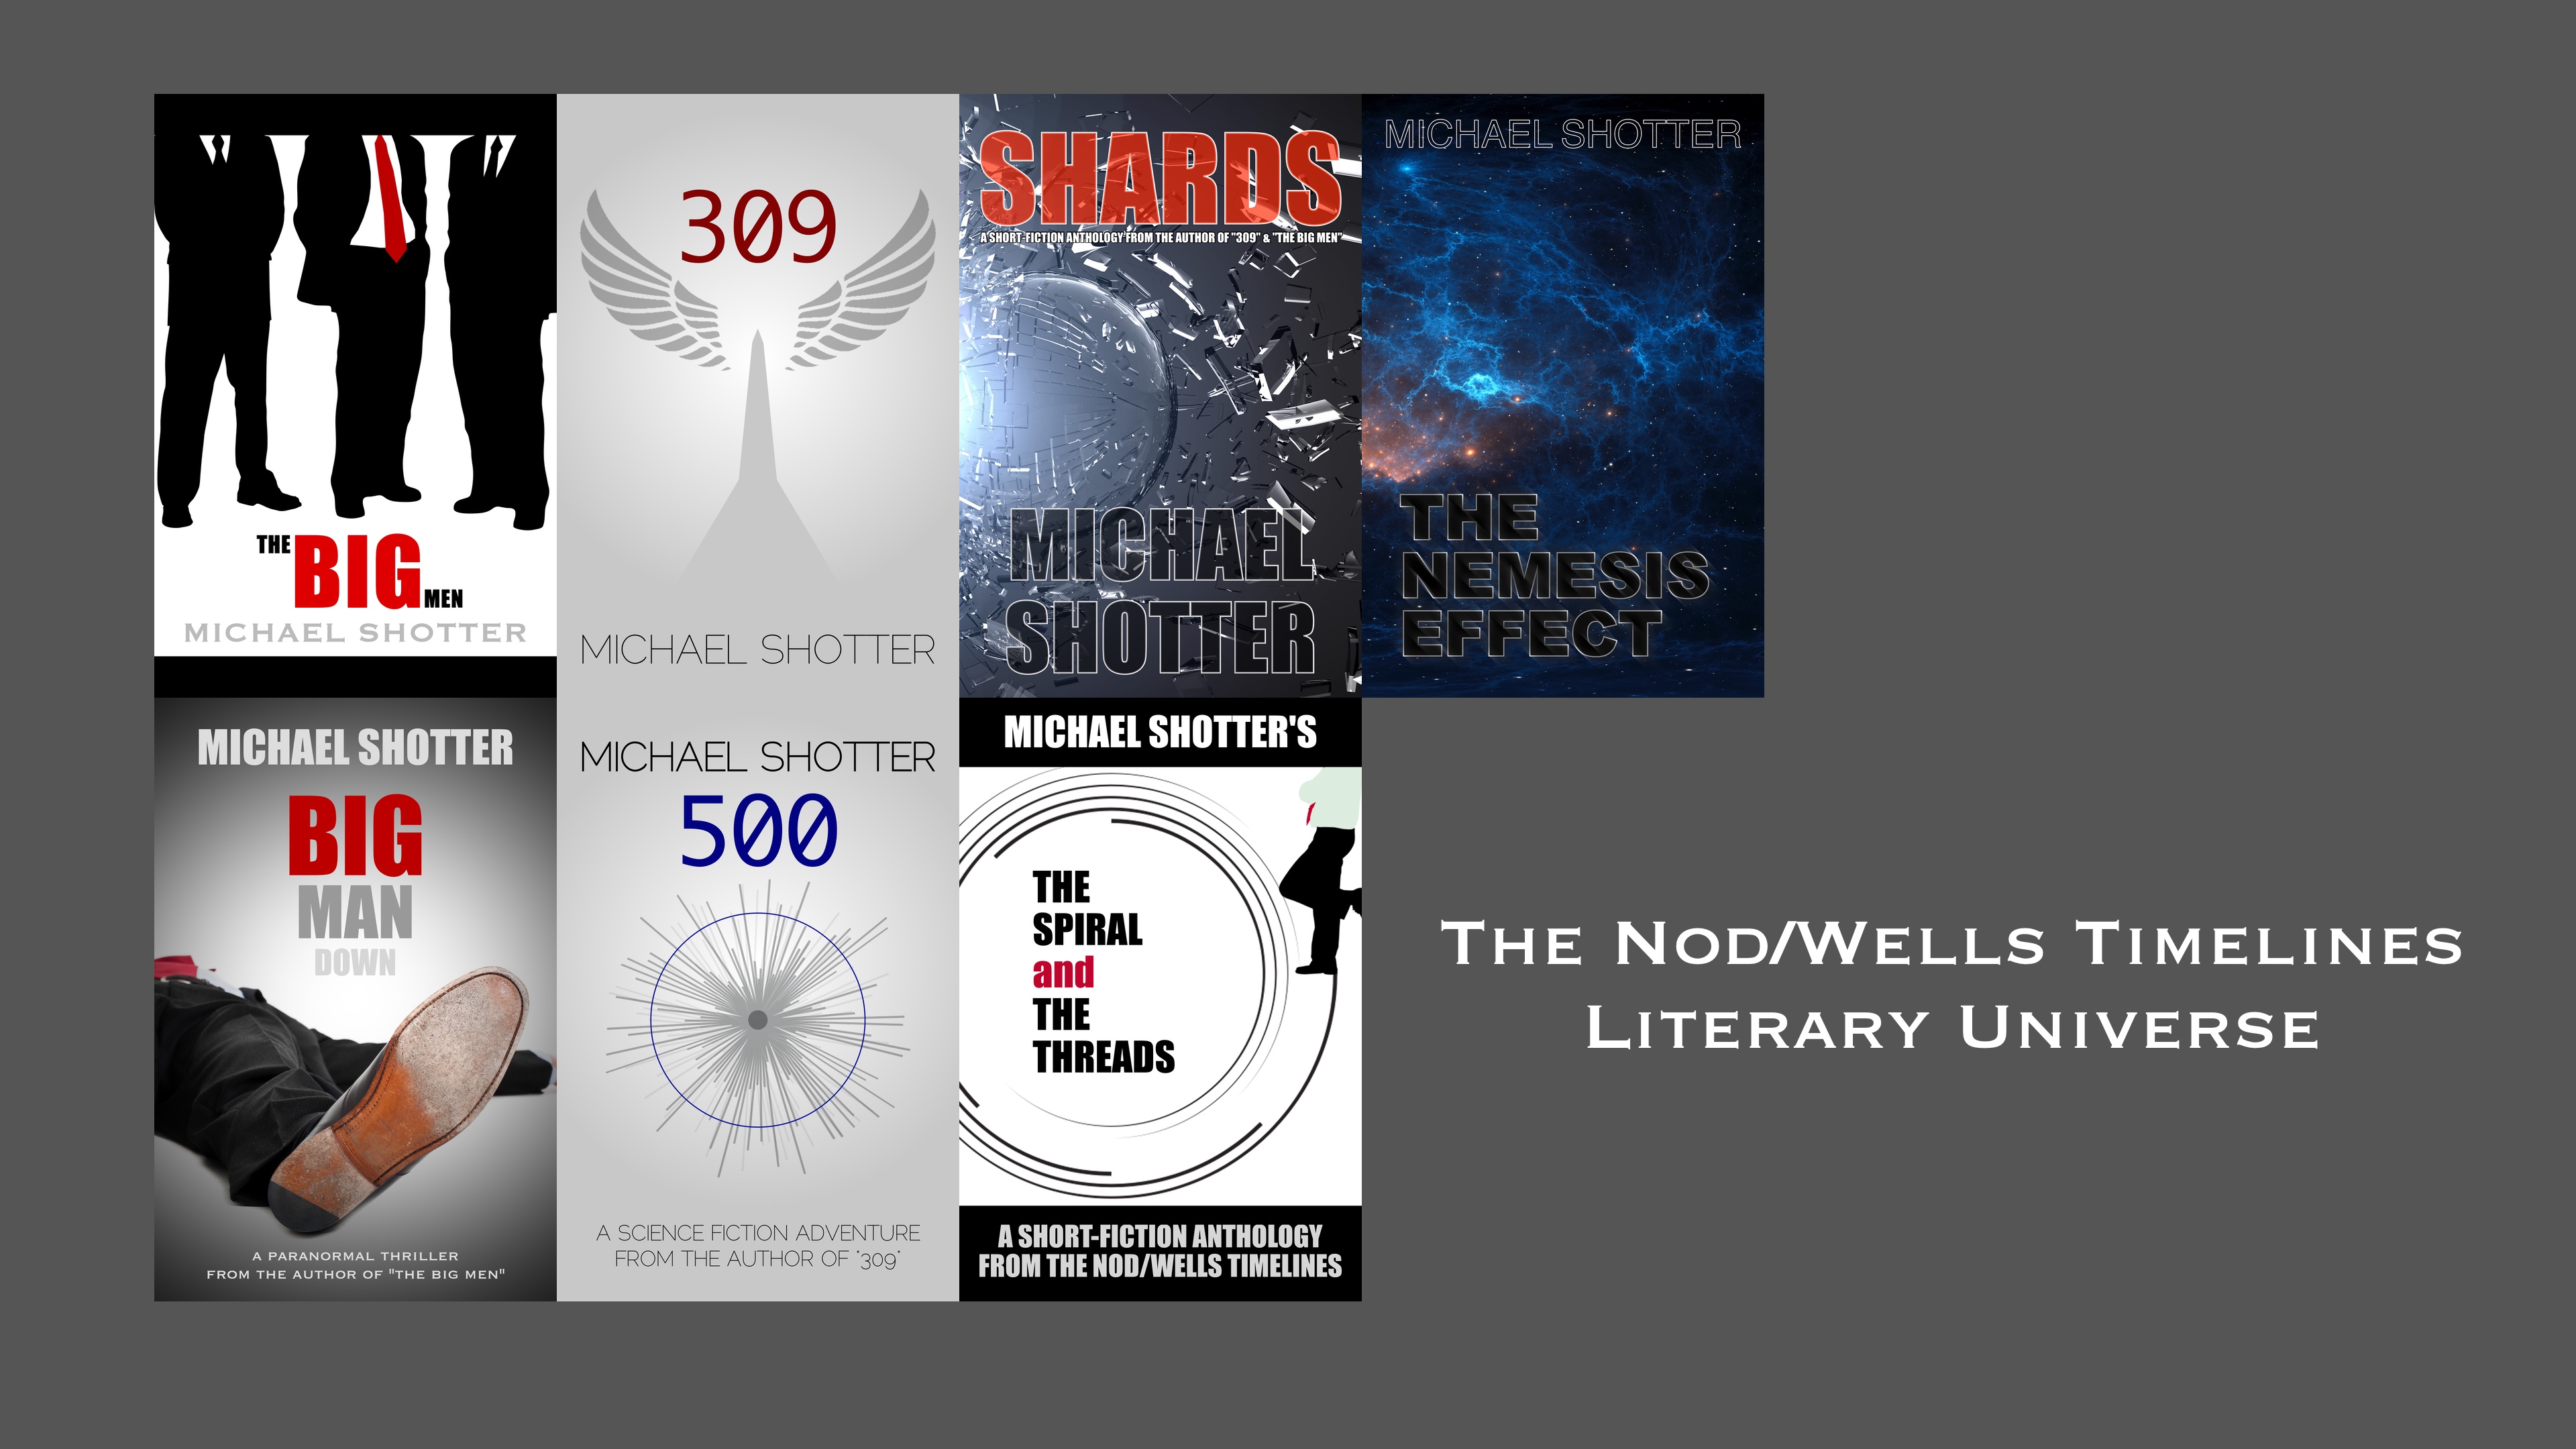 Visit Michael Shotter's Amazon Author page.